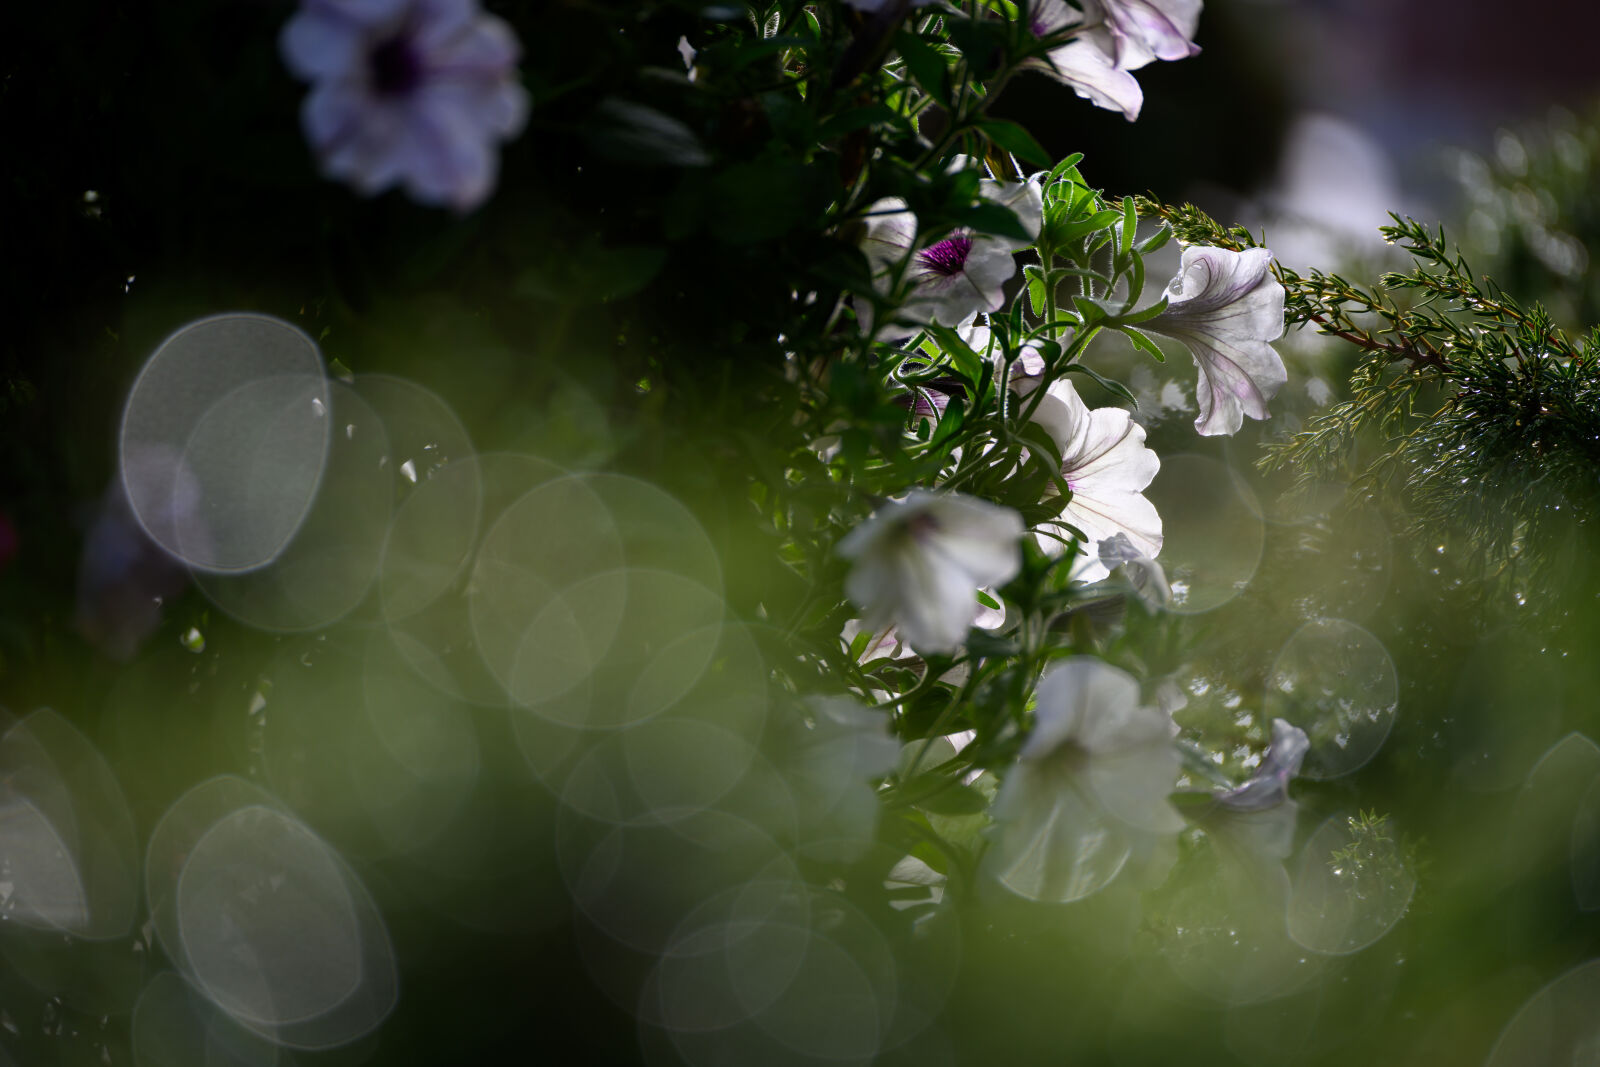 Nikon Z9 sample photo. The flower bokeh photography